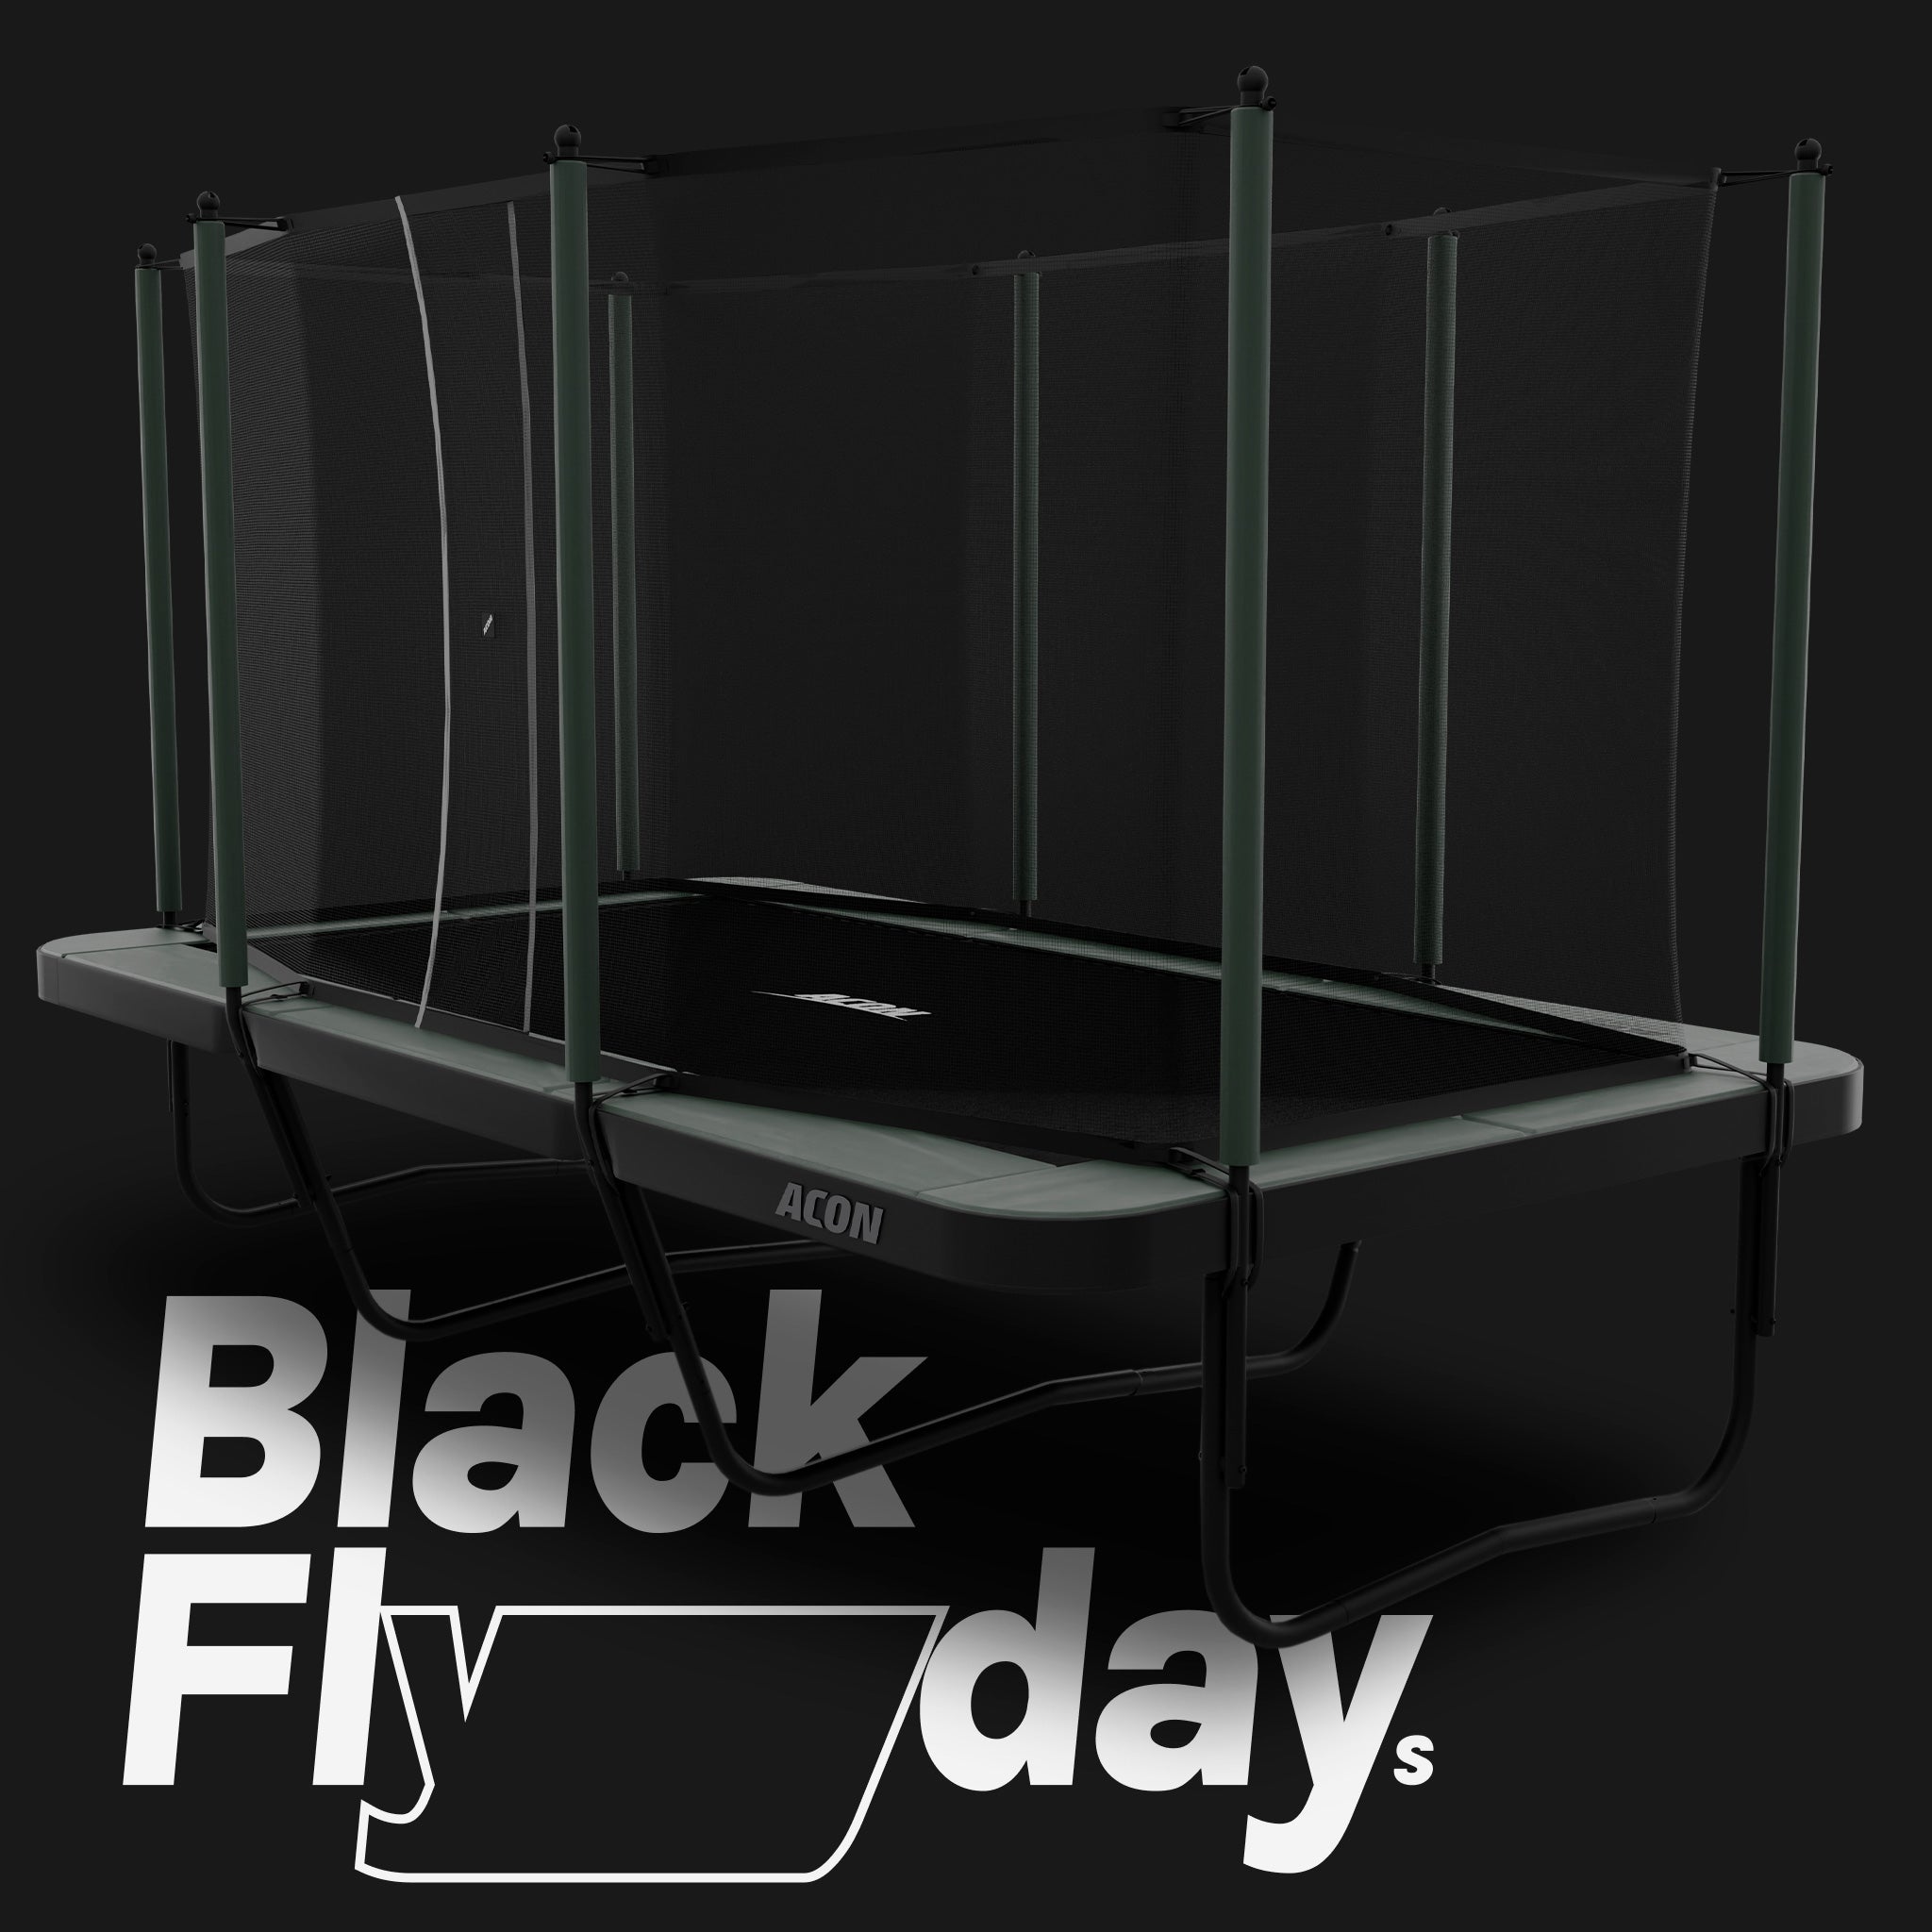 Black Flyday - suorakulmainen Acon 16 Sport HD trampoliini turvaverkolla.